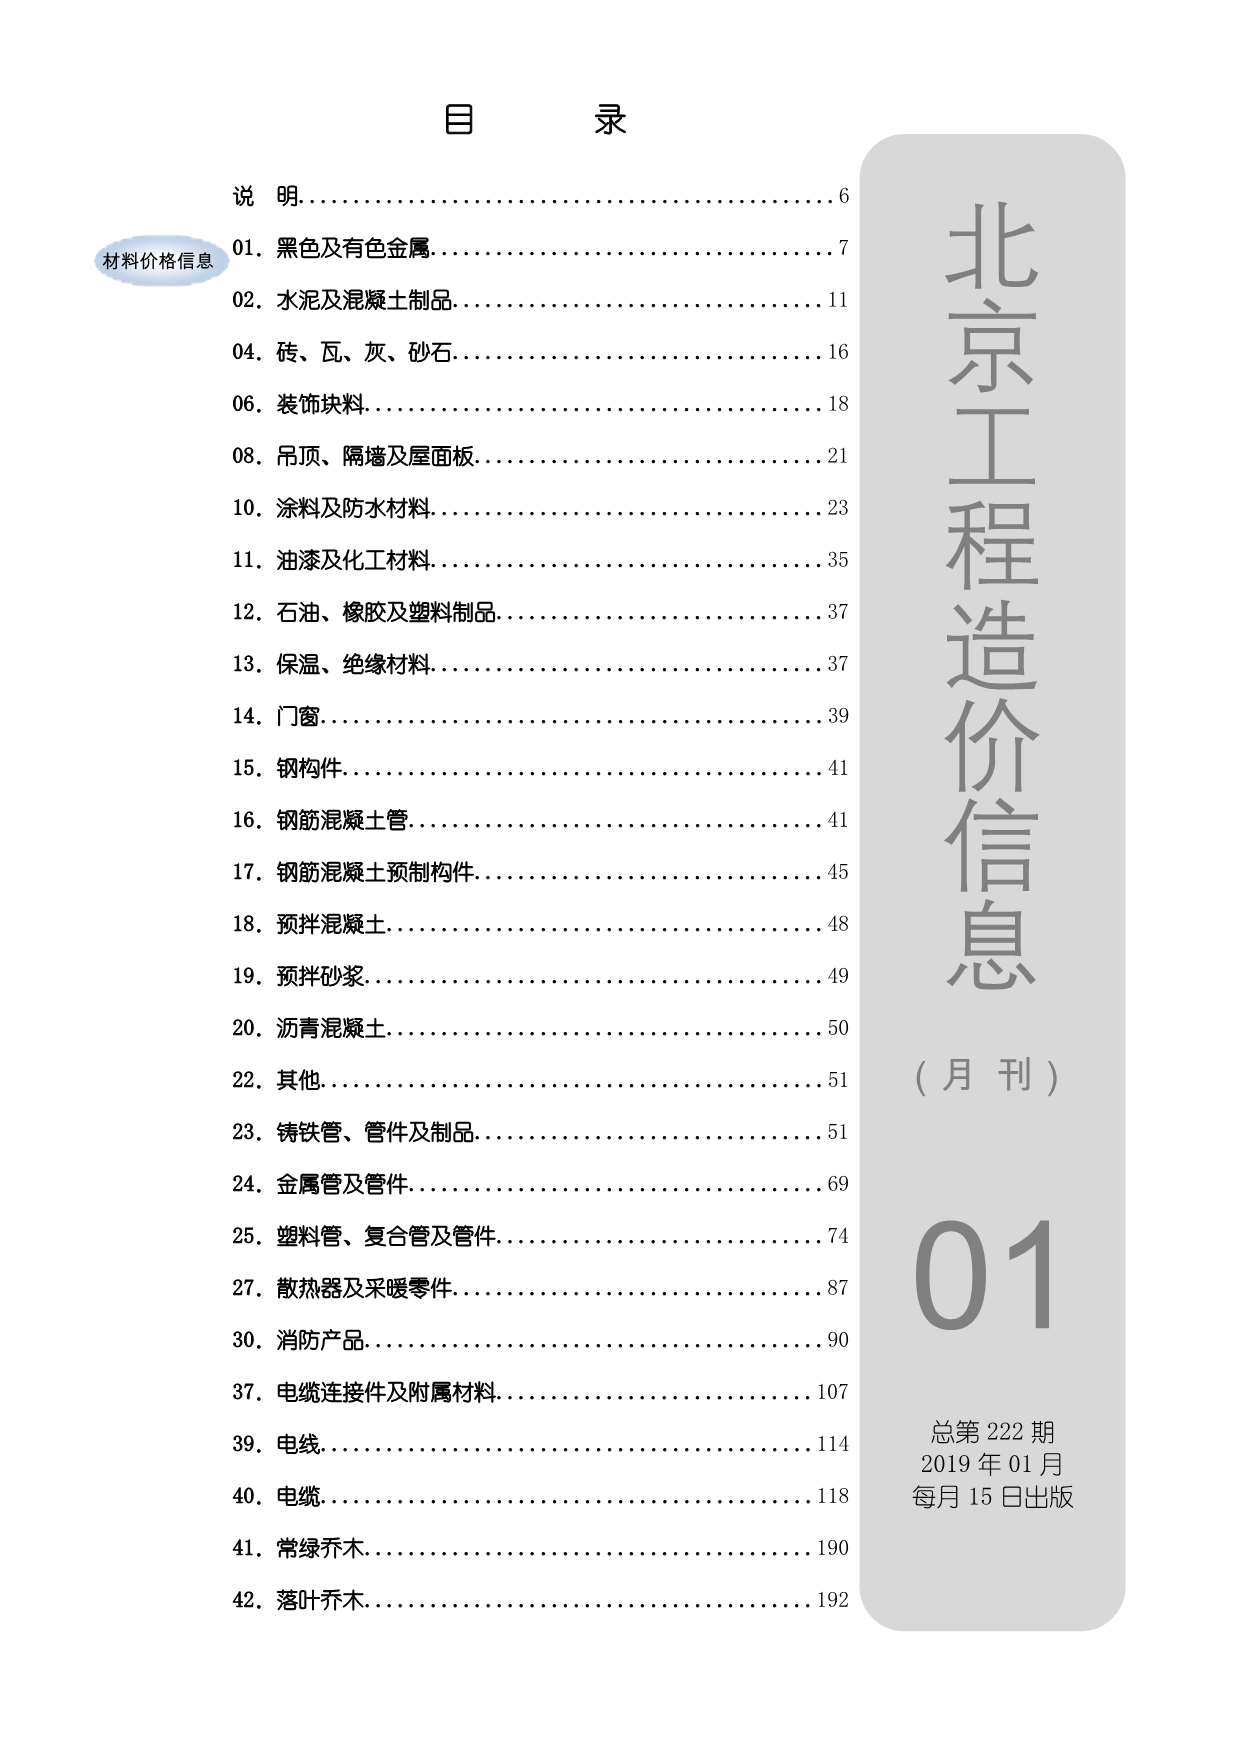 北京市2019年1月工程信息价_北京市信息价期刊PDF扫描件电子版